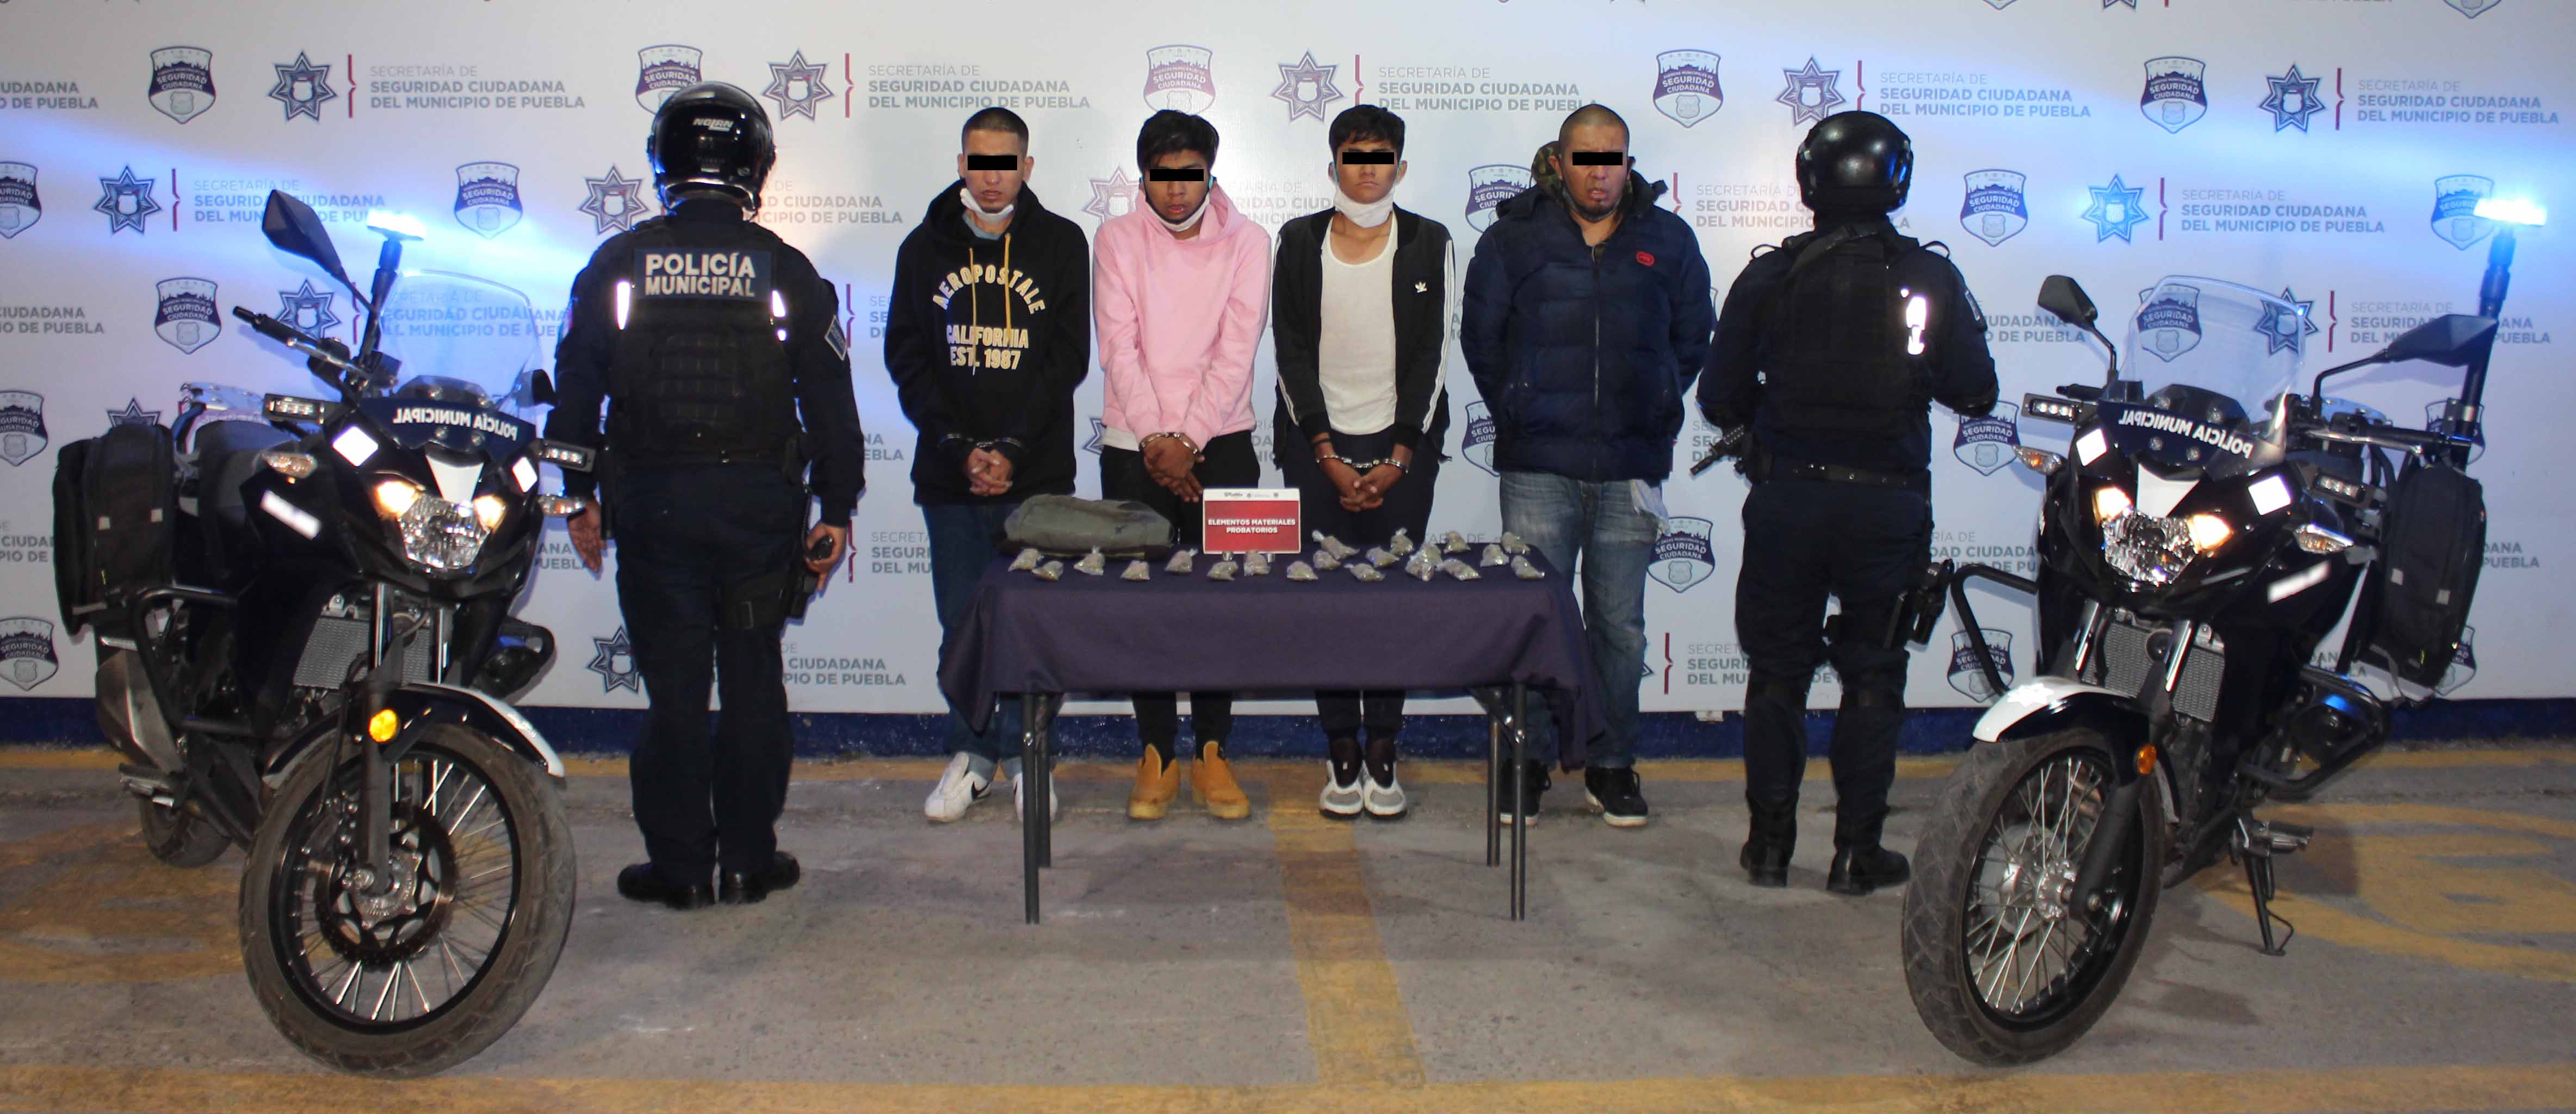 Desarticuló Policía municipal de Puebla a banda presuntamente dedicada al narcomenudeo